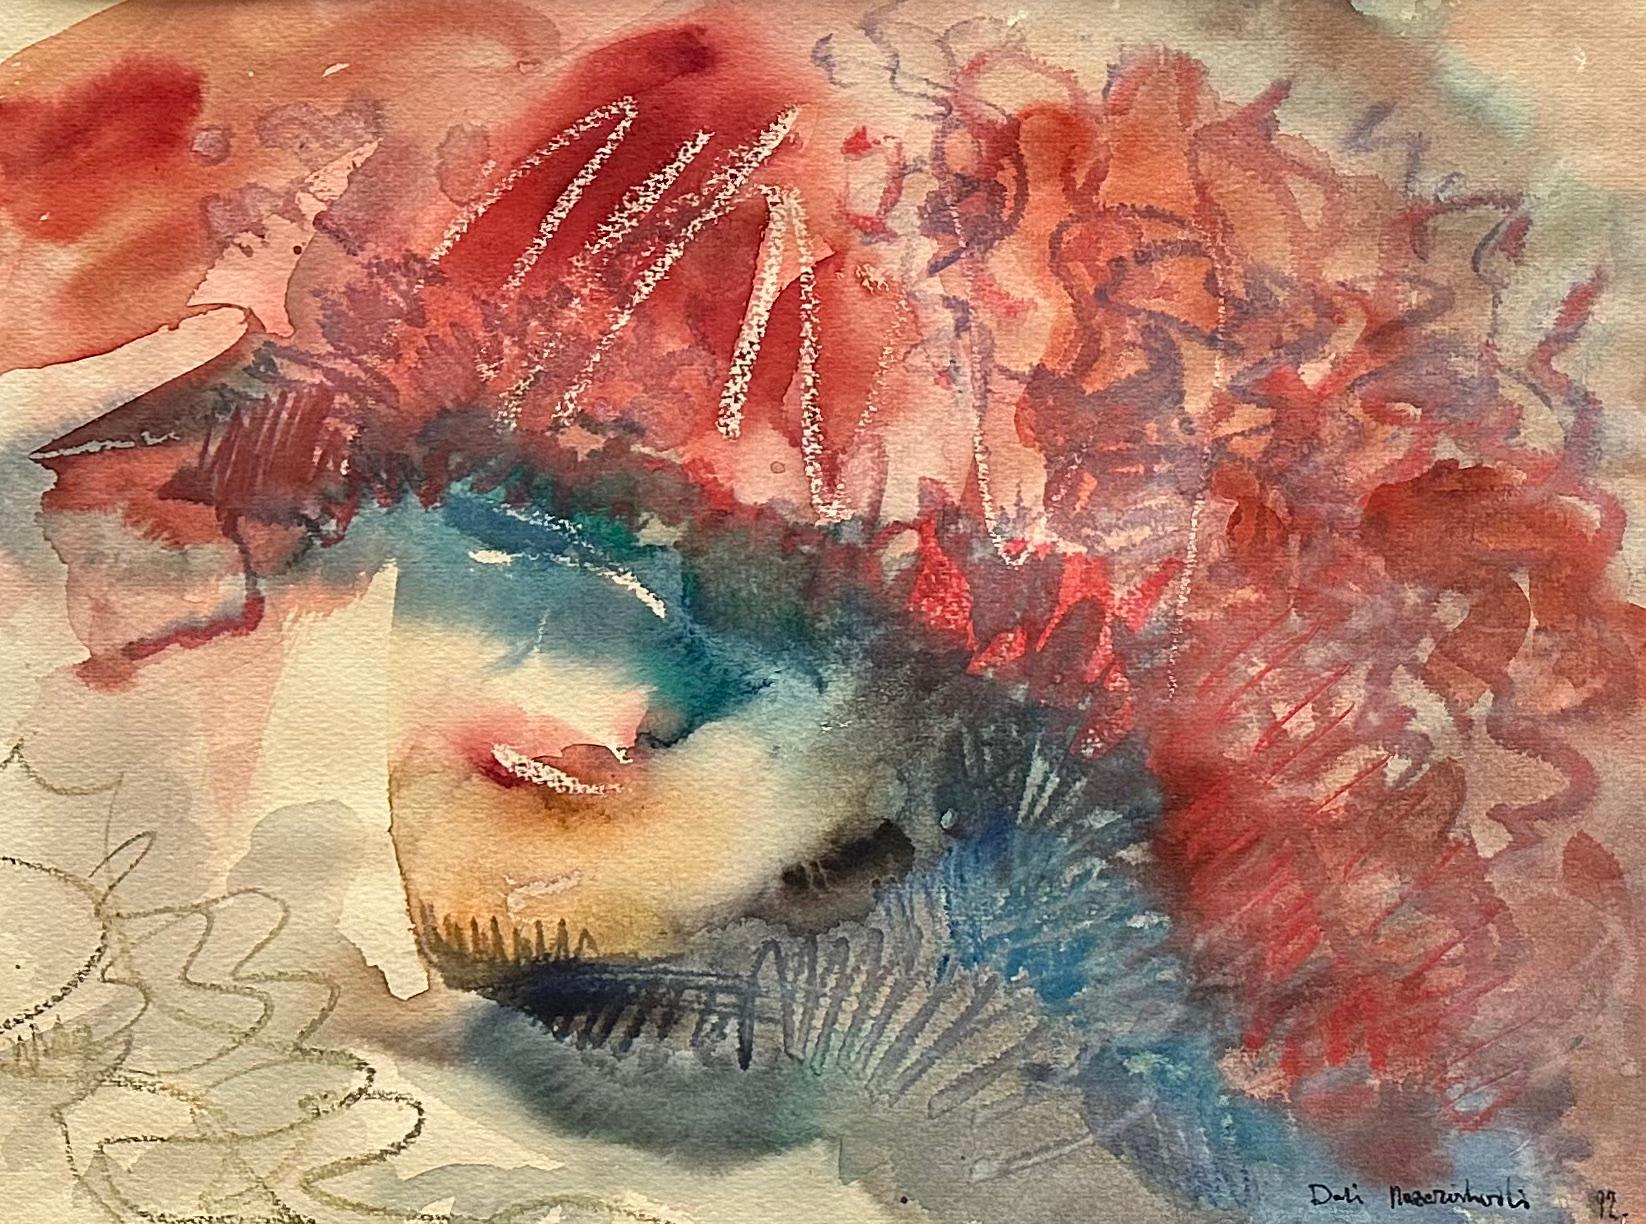 Aquarelle sur papier français
Encadré, 50 x 60,5 x 1,5 cm (Cadre en plastique, couleur dorée) 

Dali Artistics est une artiste géorgienne née en 1958 qui vit et travaille à Tbilissi, en Géorgie. Depuis 2001, elle est membre du Councill des